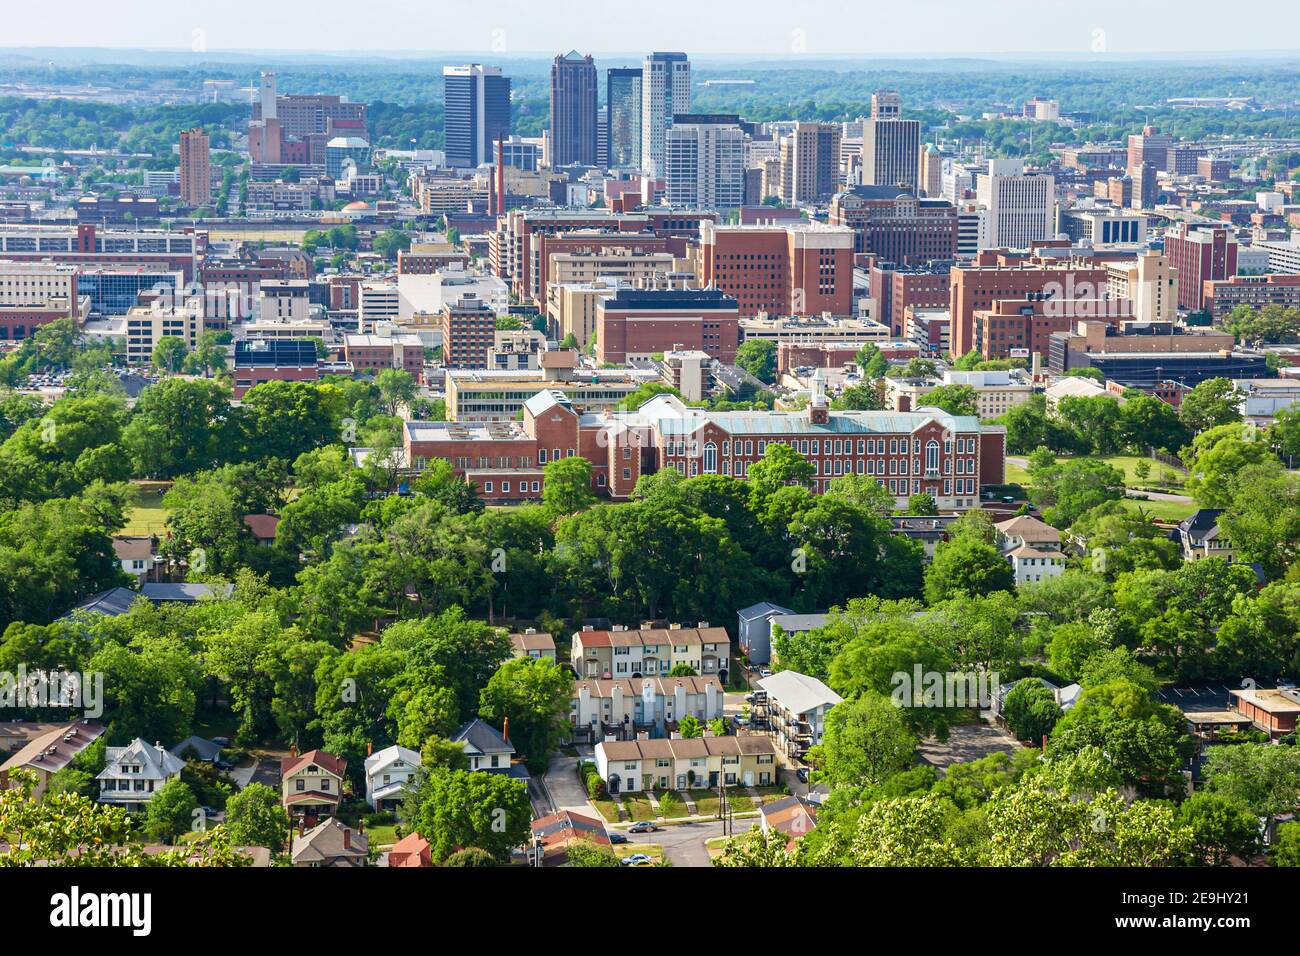 Birmingham Alabama, Blick auf die Innenstadt vom Vulcan Park Tower Observatory, Skyline Gebäude Häuser, Stockfoto